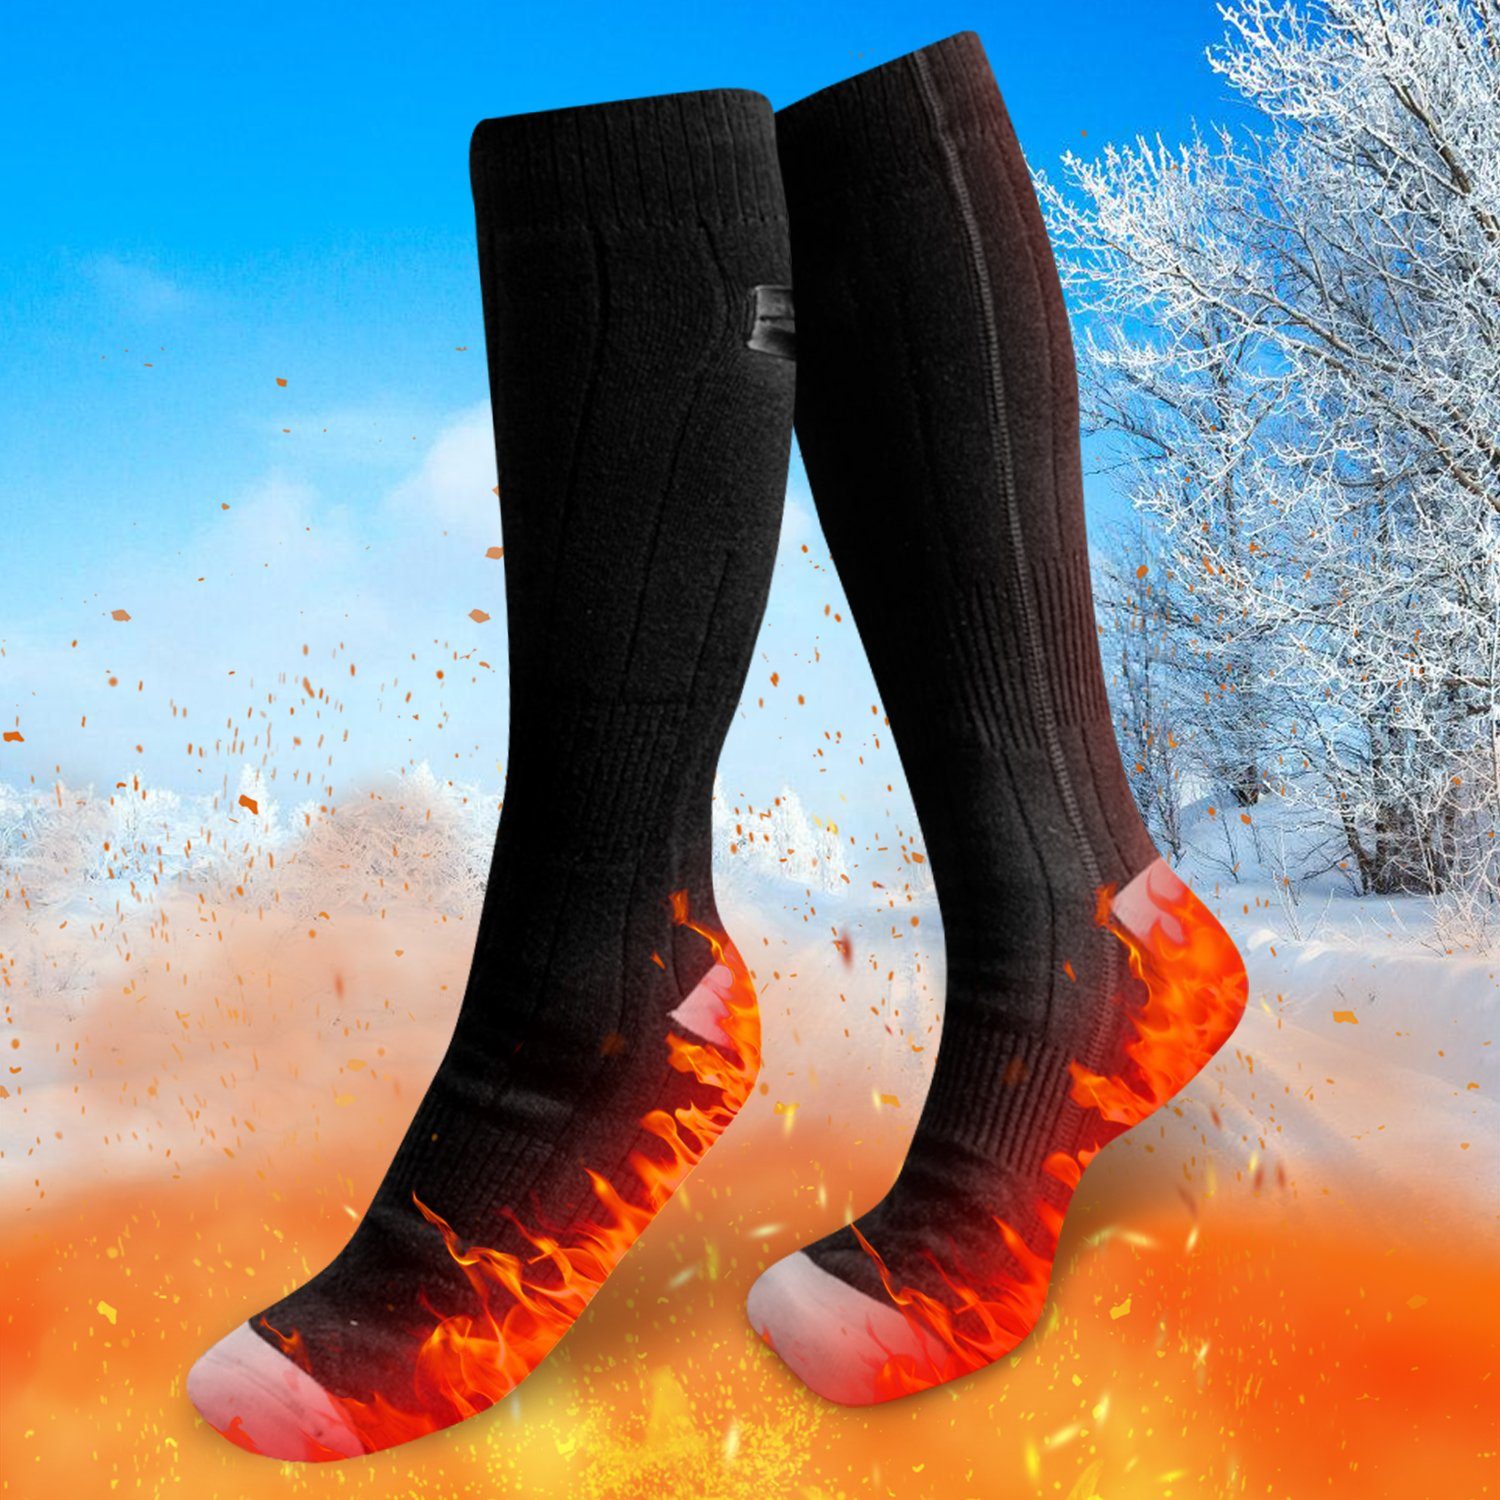 Gimisgu Einlegesohlen Beheizbare Socken Sportsocken Camping Beheizter  4200mAh Heizsocke Feet, Wie viele Gänge sind einzustellen: drei Gänge zur  Temperaturregelung